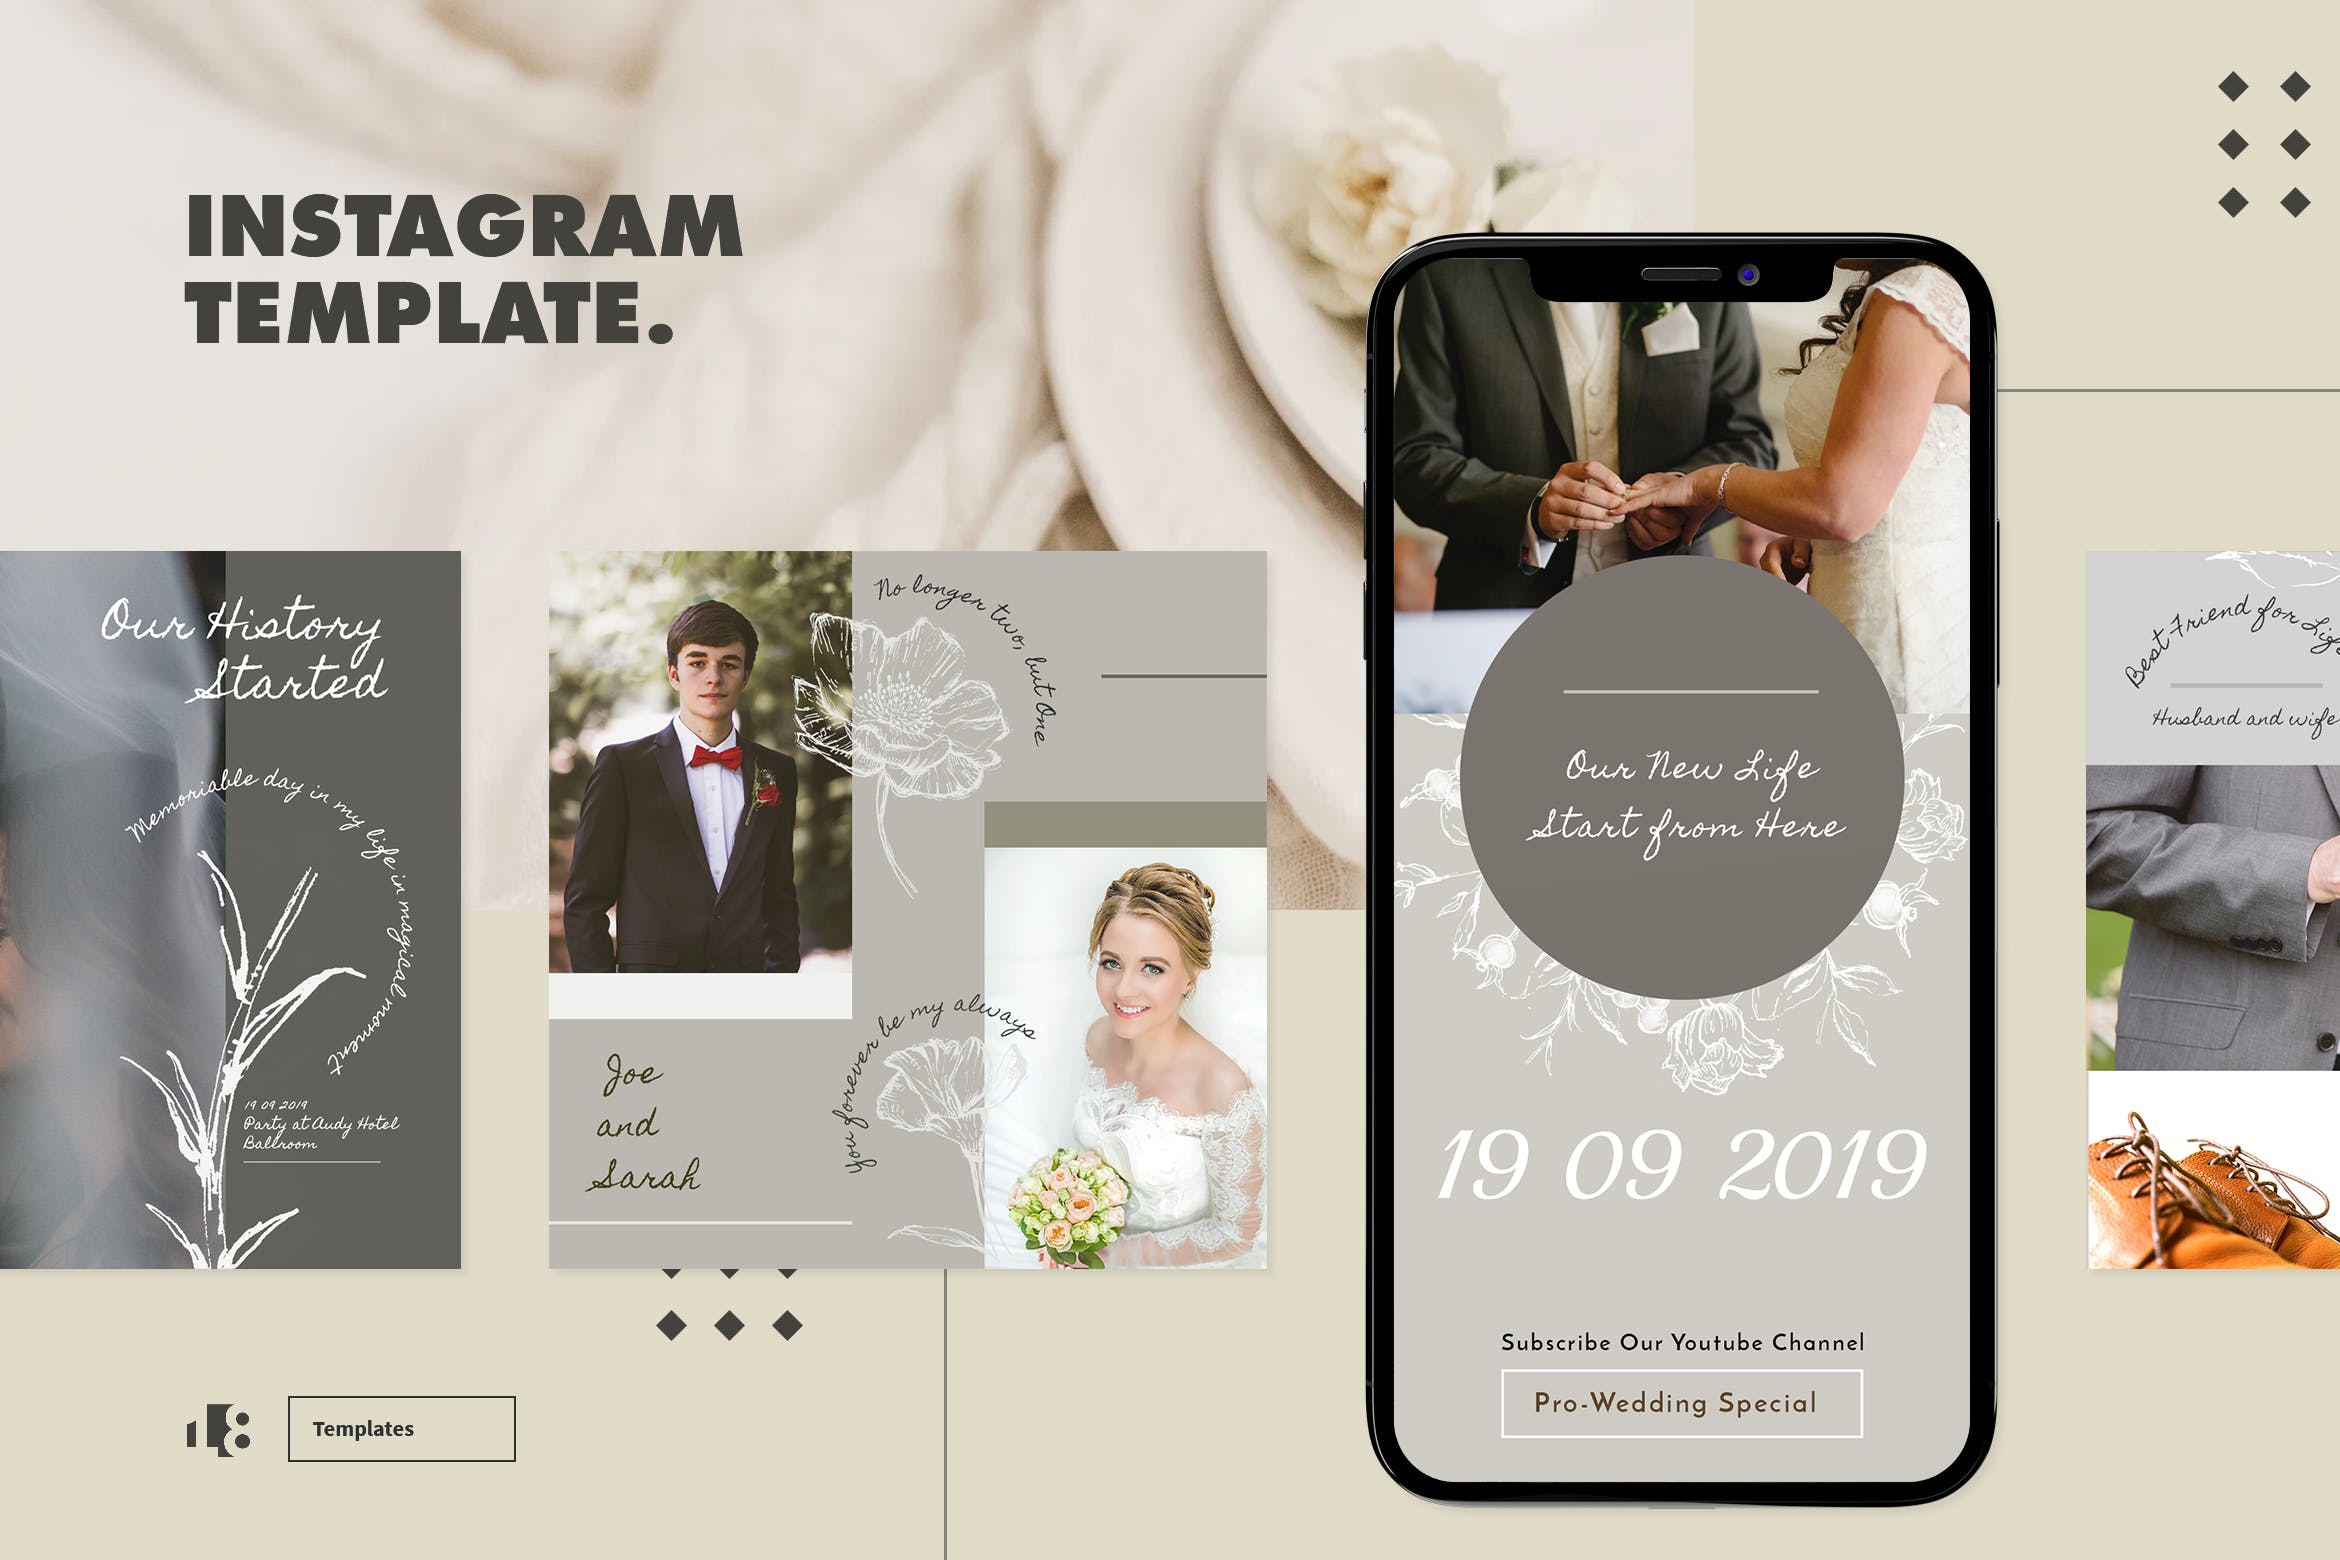 婚礼婚纱摄影Instagram社交贴图设计模板第一素材精选v1 Instagram Template v1插图